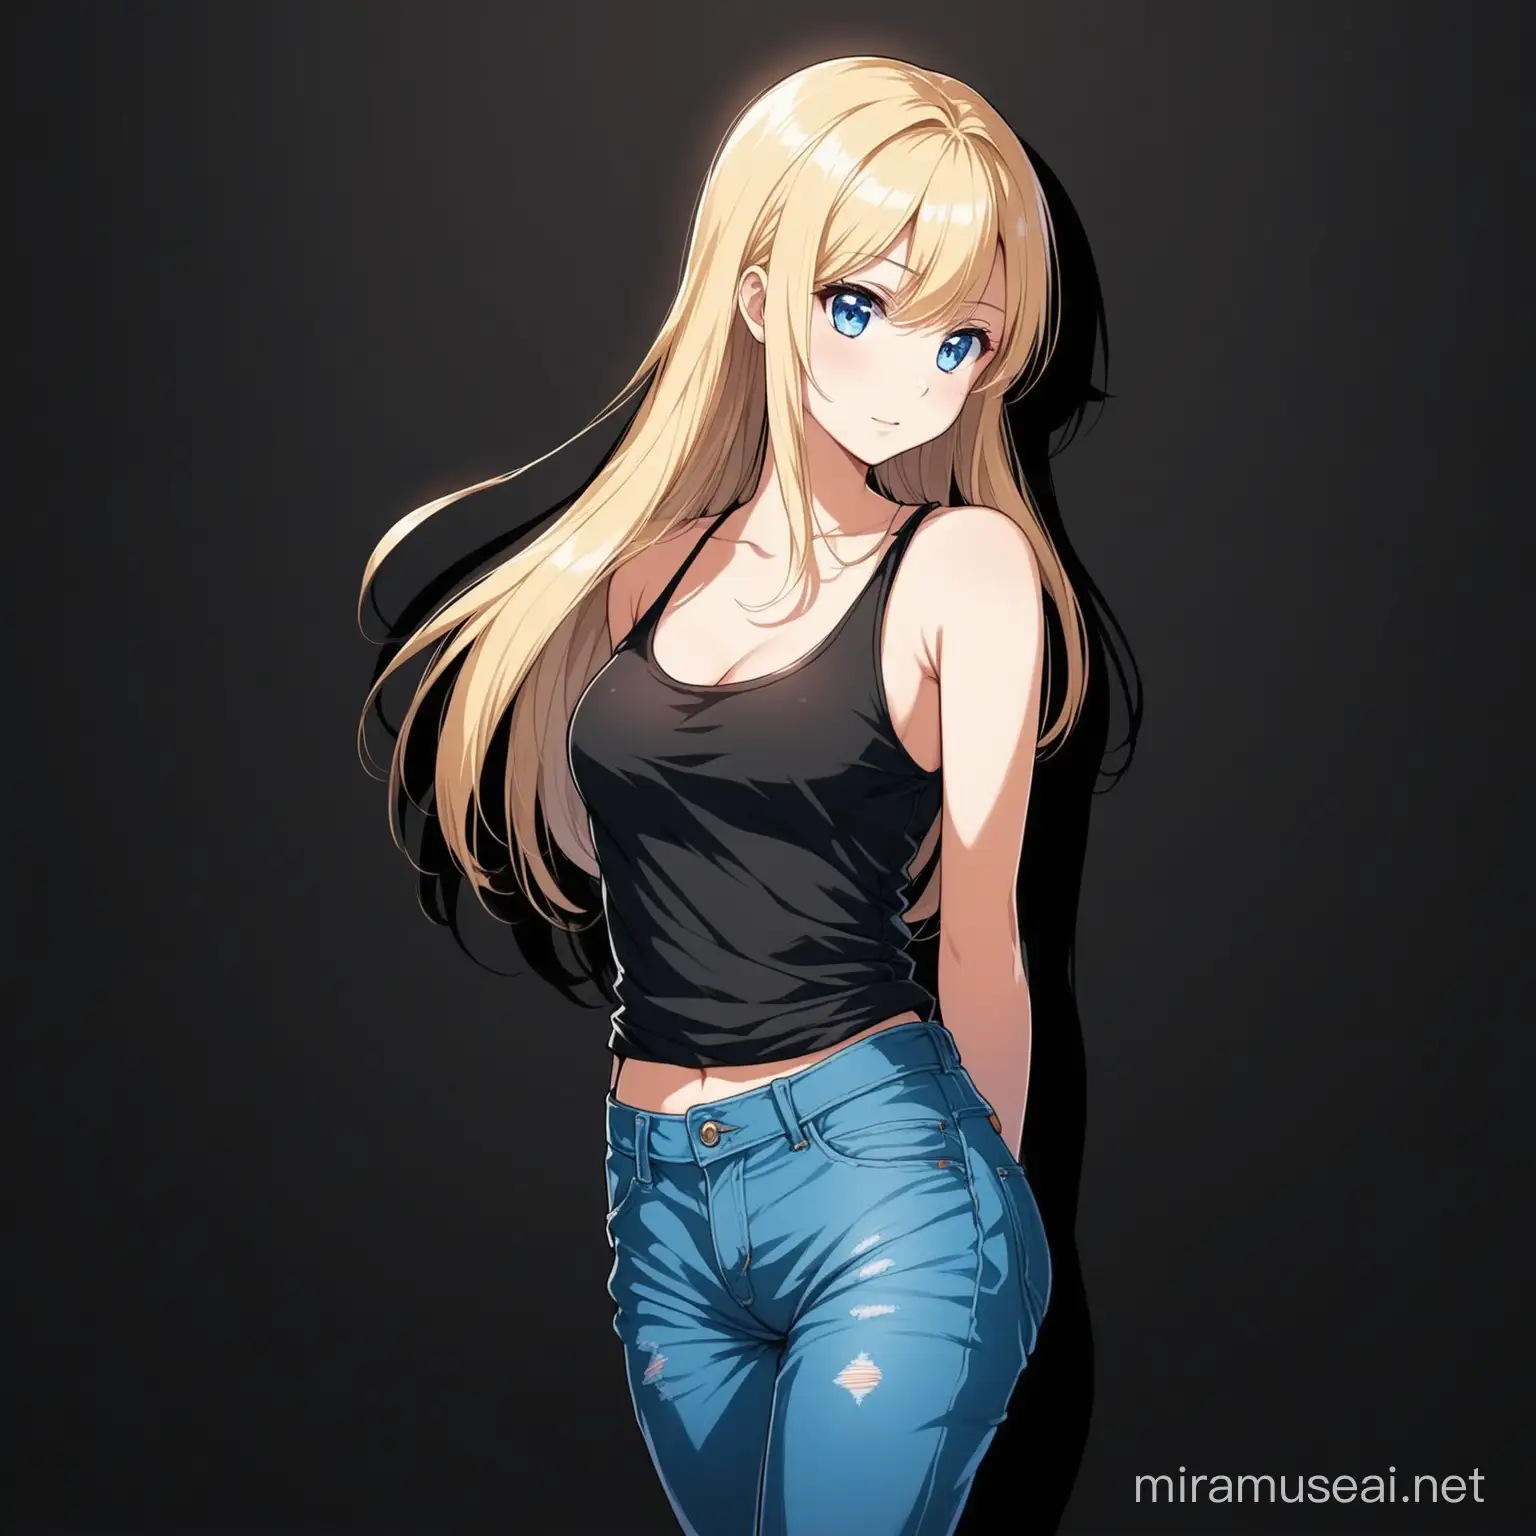 25 Jährige Frau, blondes langes Haar zur Seite gekämmt, blaue Augen, schwarzes Tanktop und Jeans, Aufnahme, süß, sexy, dunkel, Schatten, Schwarzer Hintergrund, Anime